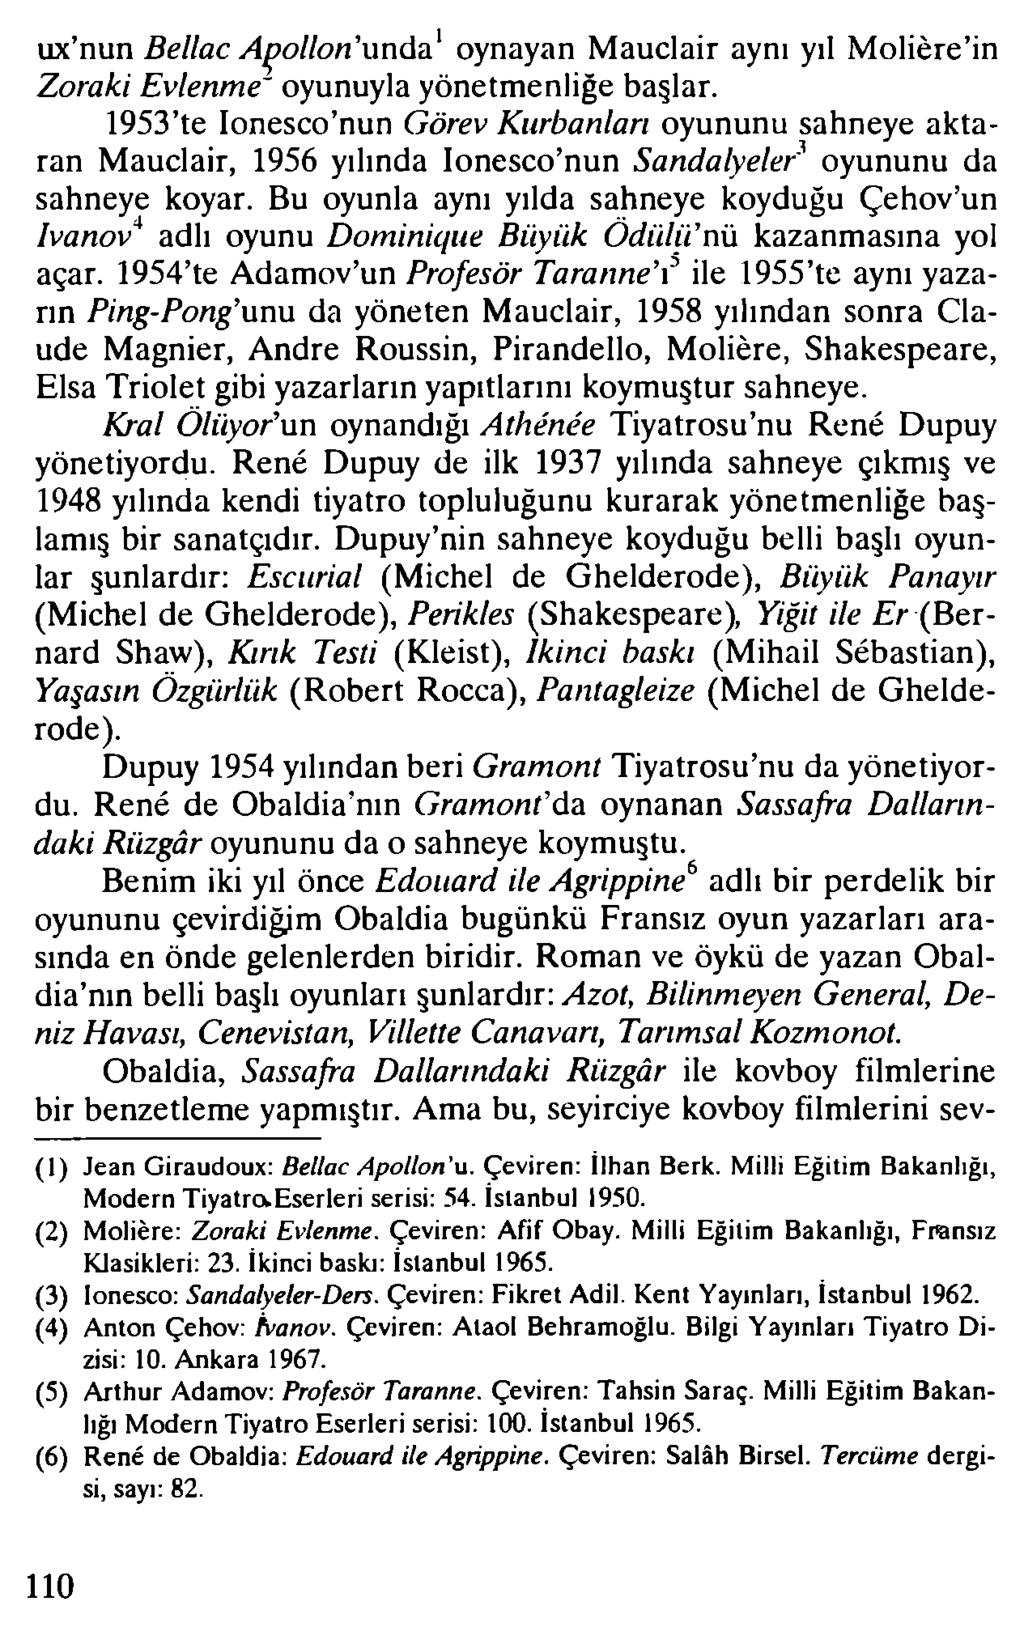 ux nun Bellac Apollon'unda1 oynayan Mauclair aynı yıl M olière in Zoraki Evlenme' oyunuyla yönetmenliğe başlar.